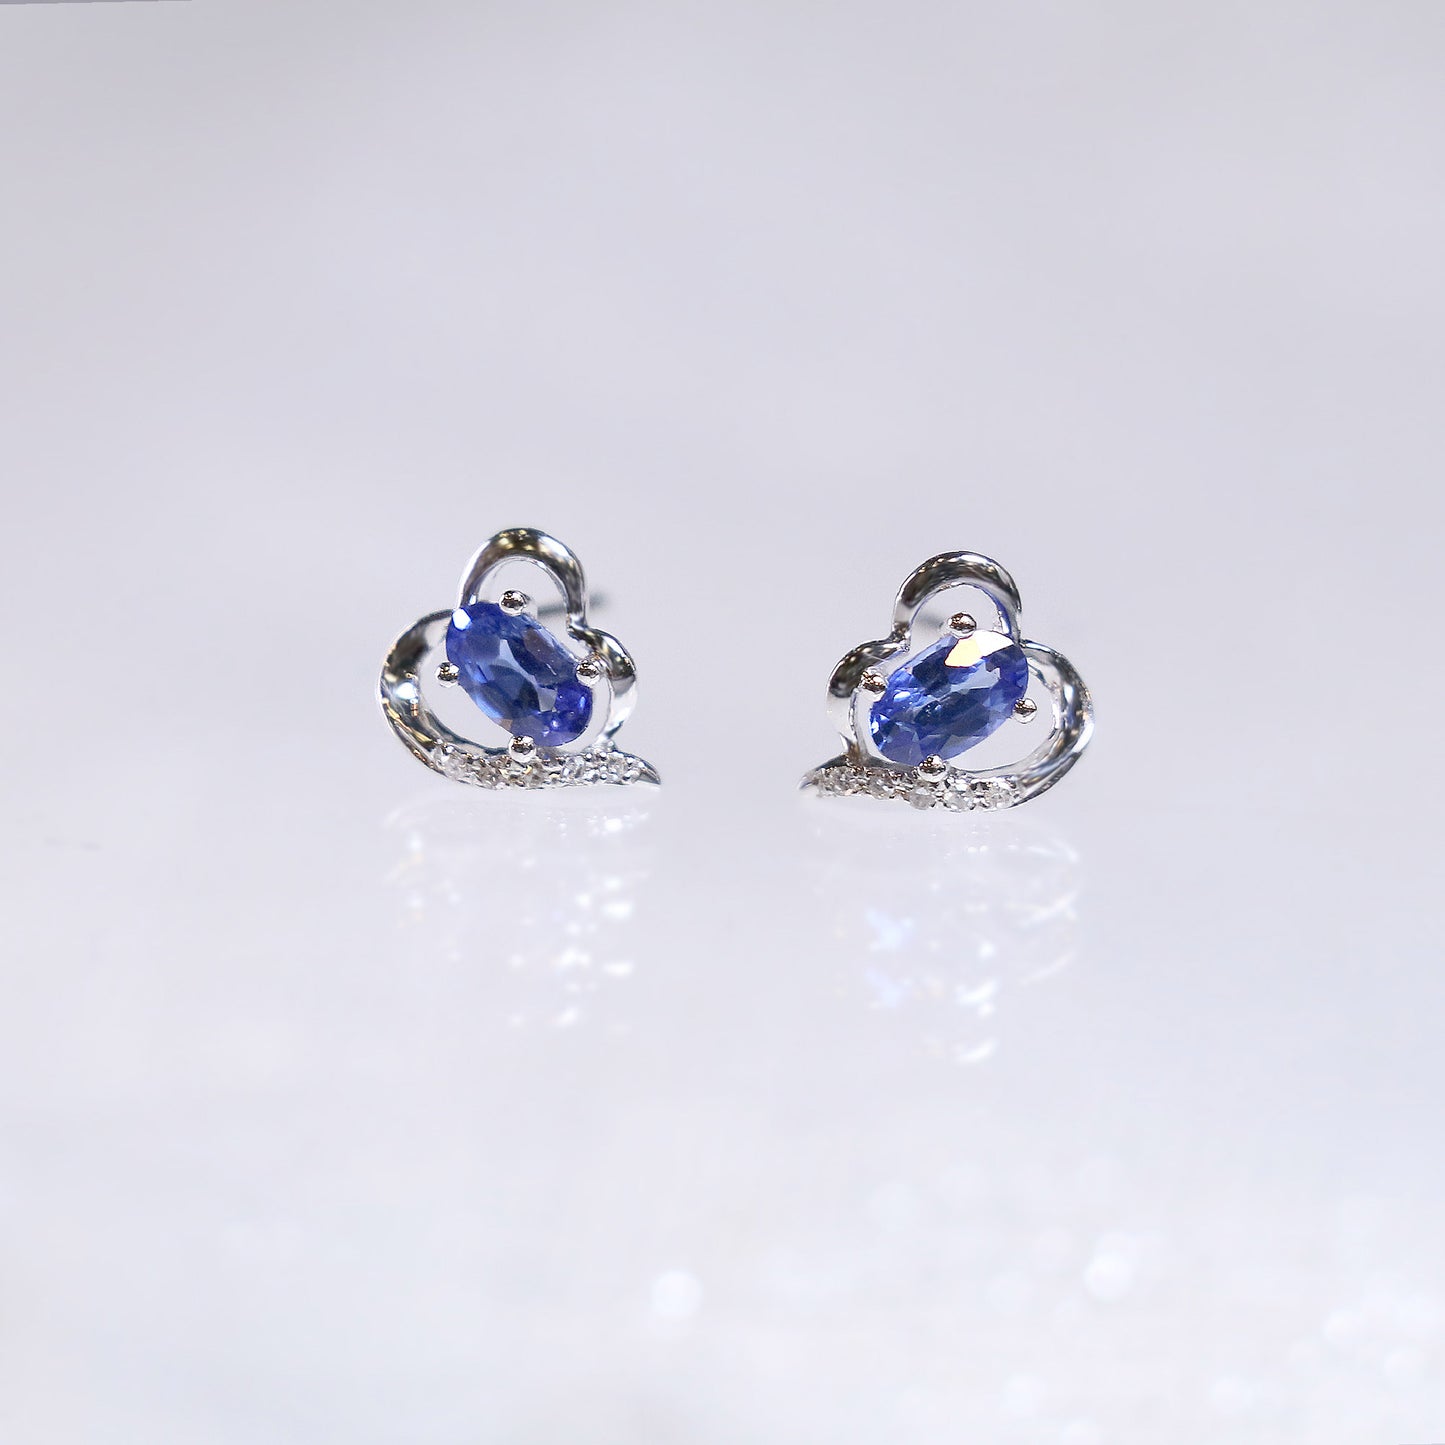 Oval Sapphire Heart Earrings